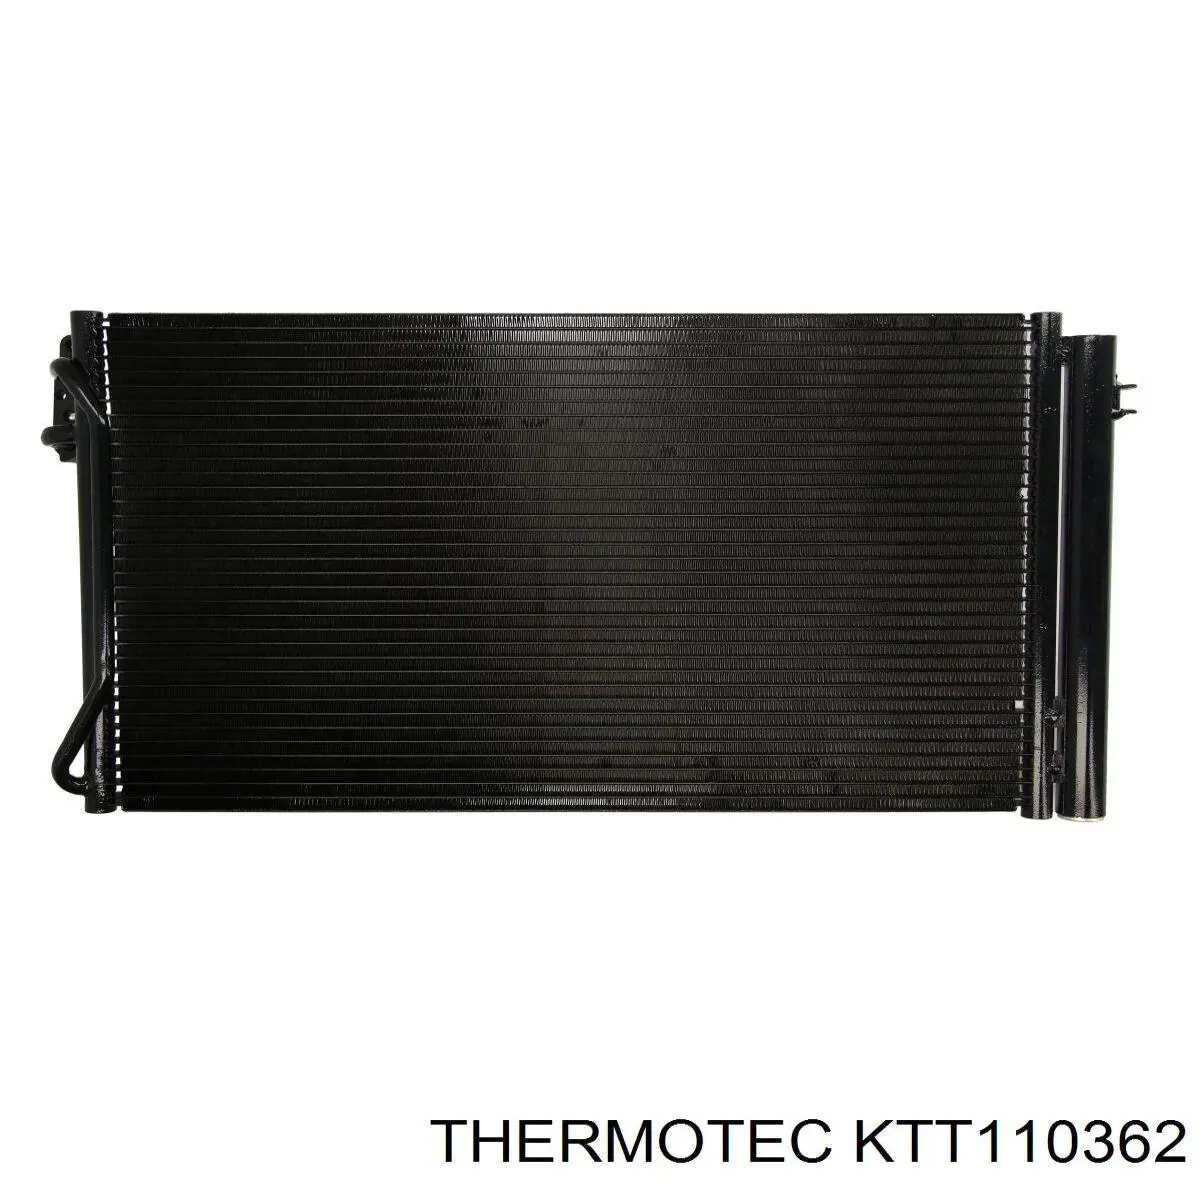 KTT110362 Thermotec condensador aire acondicionado